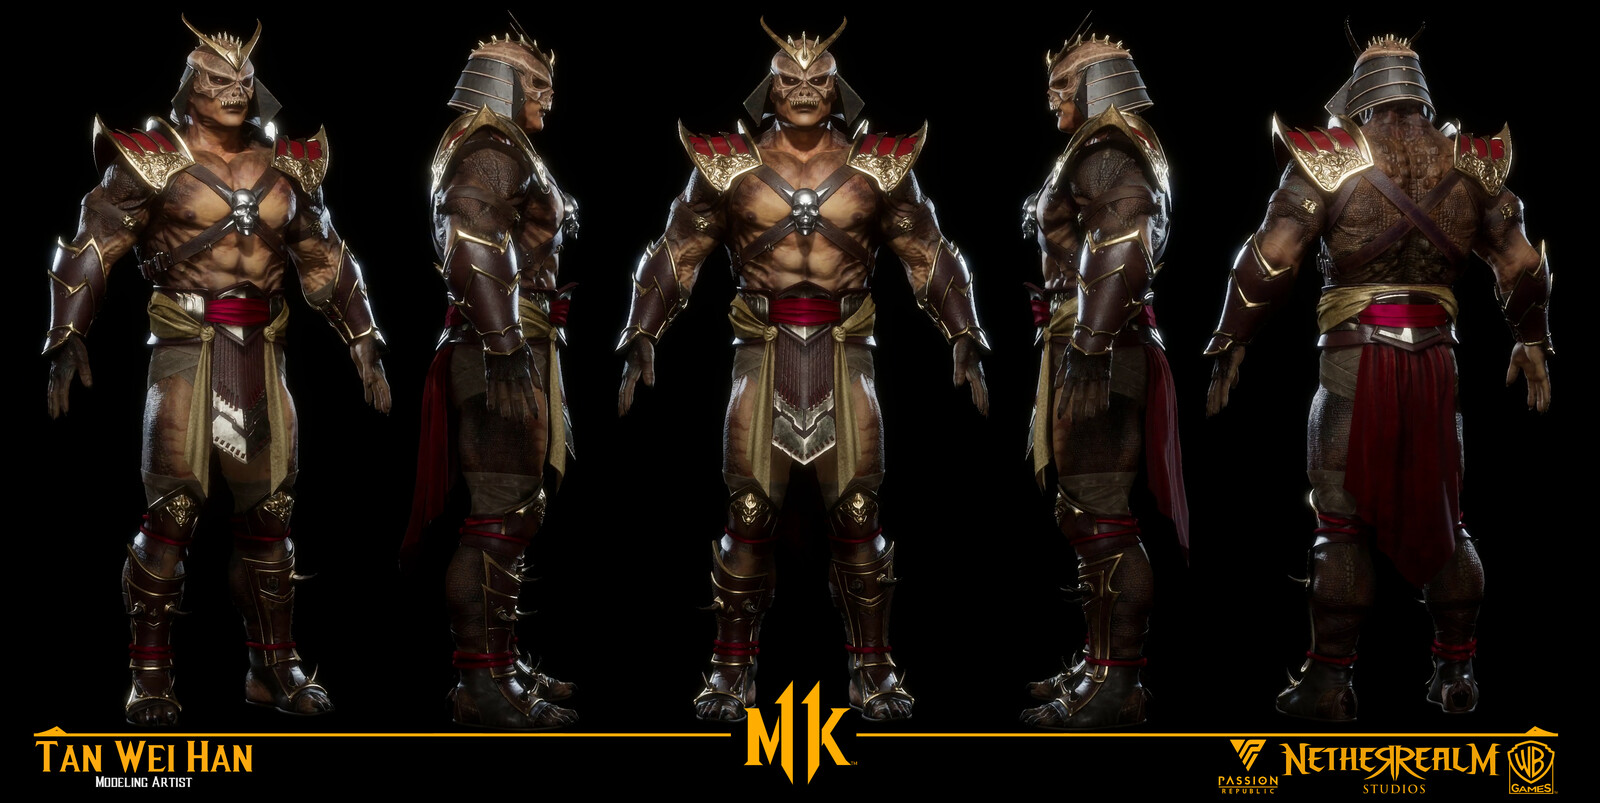 ArtStation - Mortal Kombat 11 - Shao Kahn Present